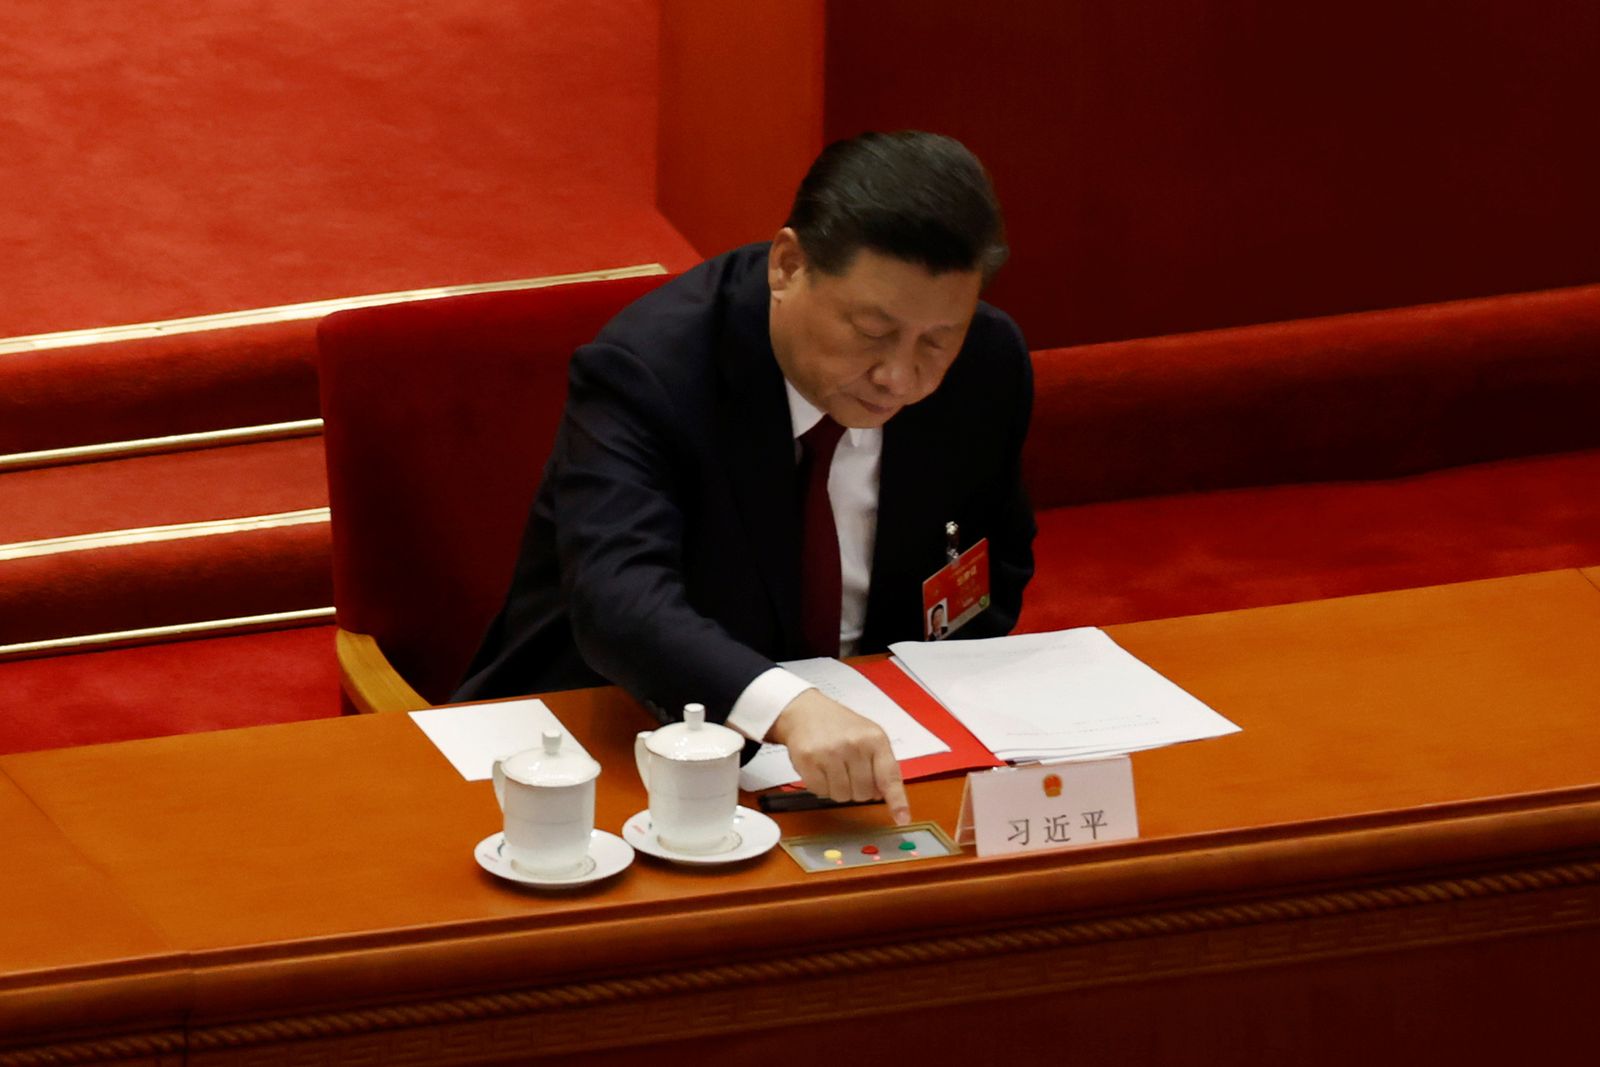 الرئيس الصيني شي جينبينغ يصوّت على التعديلات الانتخابية لهونغ كونغ في البرلمان - 11 مارس 2021 - REUTERS